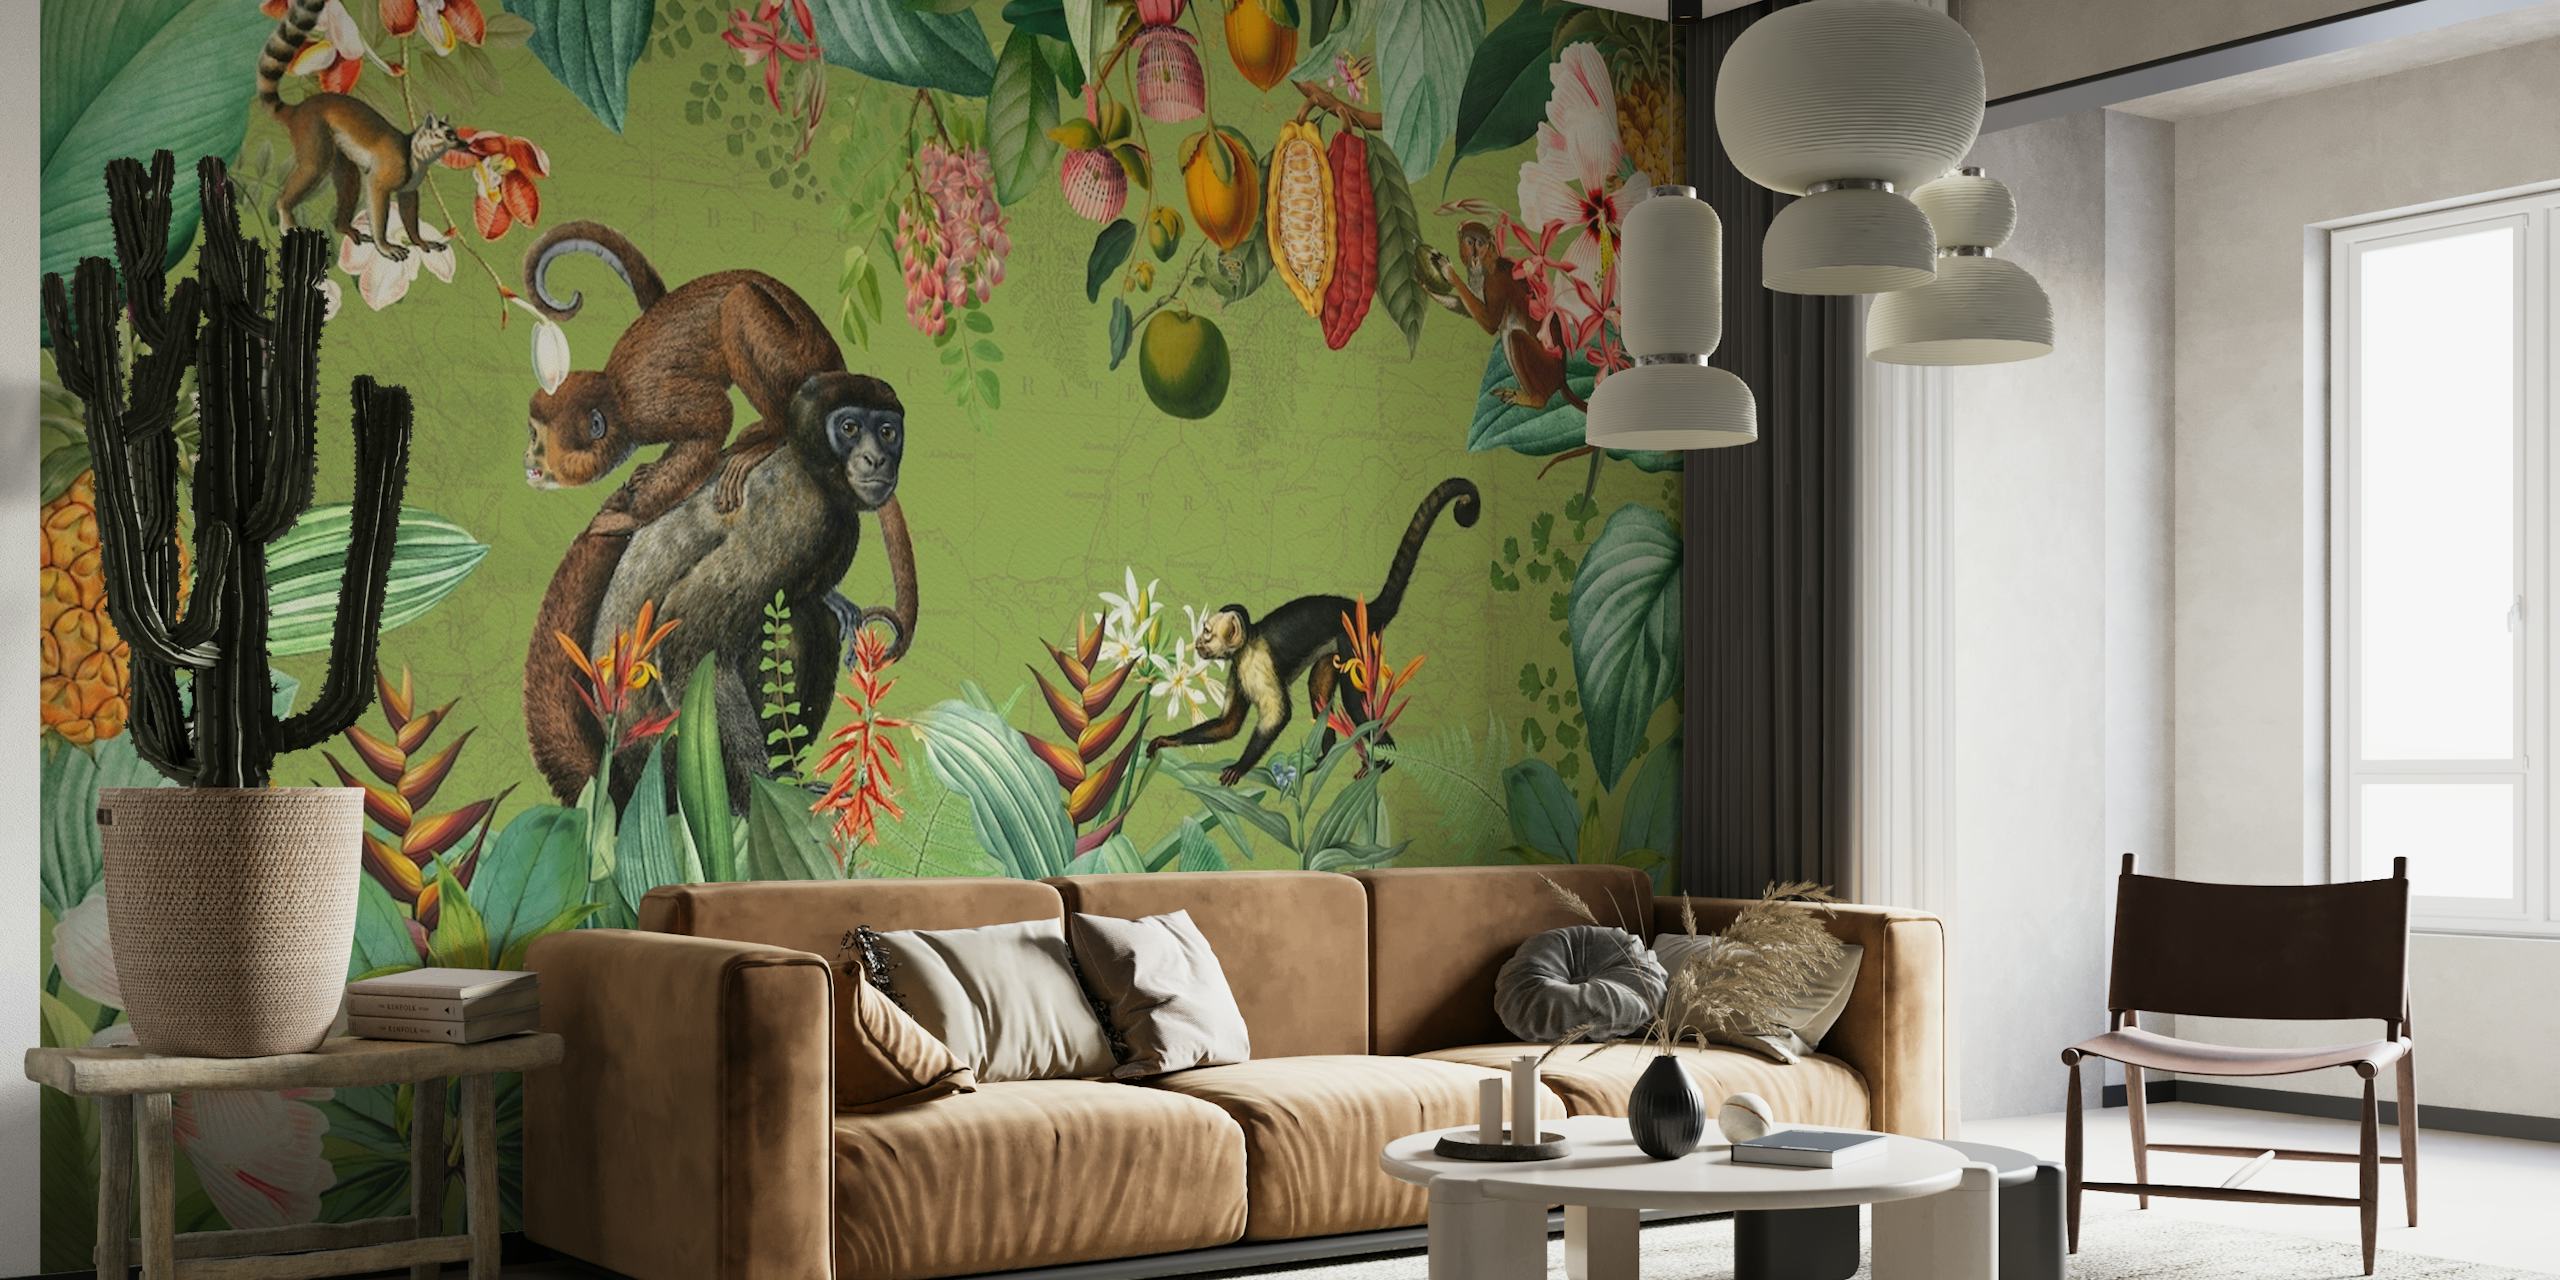 Ein Wandgemälde im Vintage-Stil, das Affen und tropische Pflanzen in einer afrikanischen Dschungelumgebung zeigt